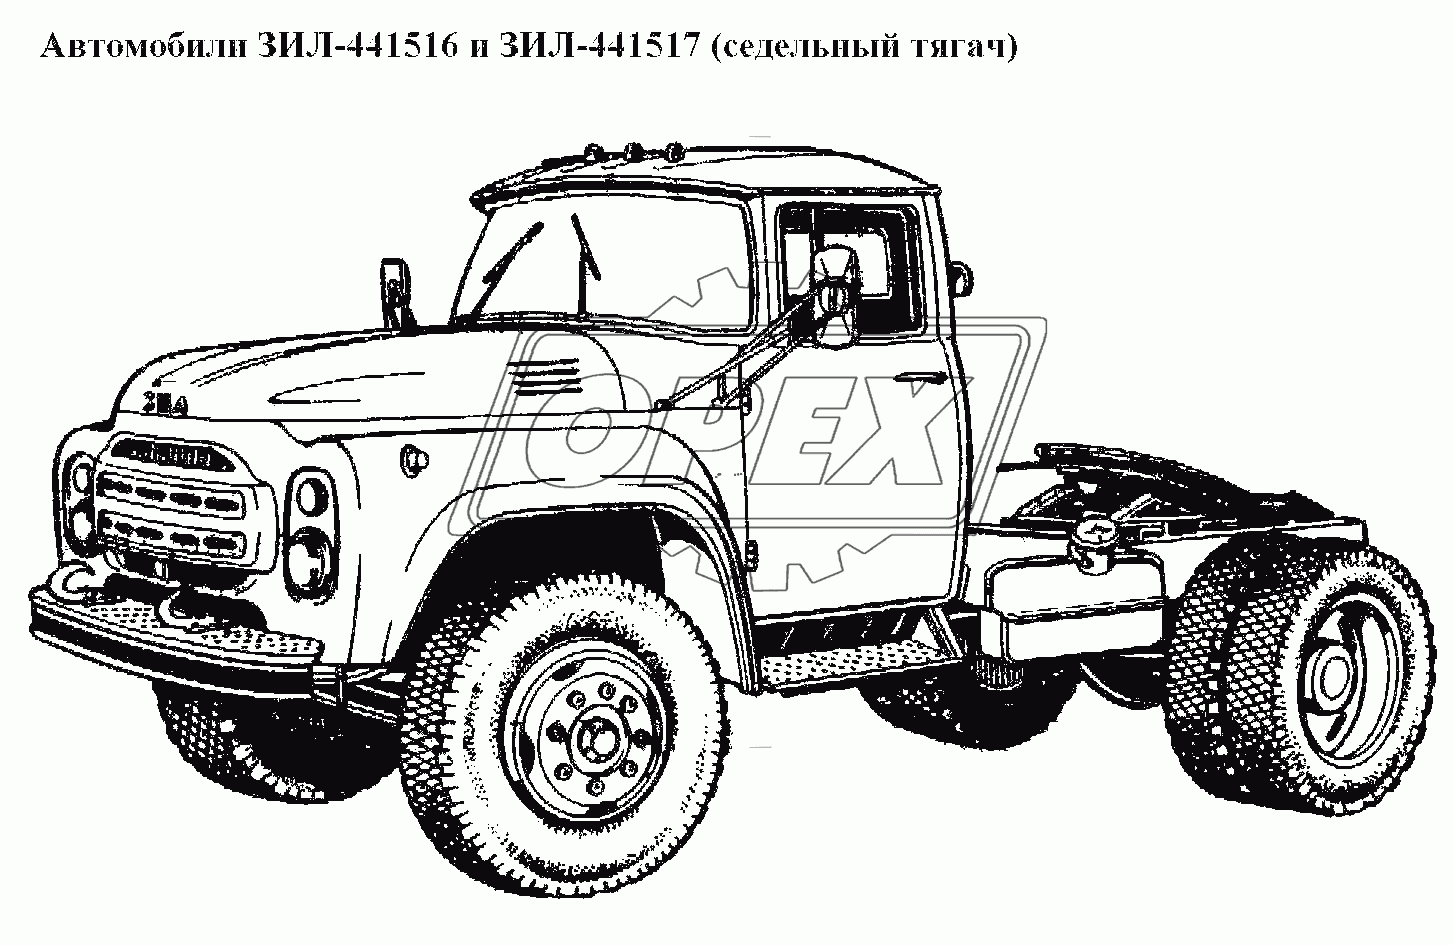 Автомобили ЗИЛ-441516, ЗИЛ-441517 (седельный тягач)